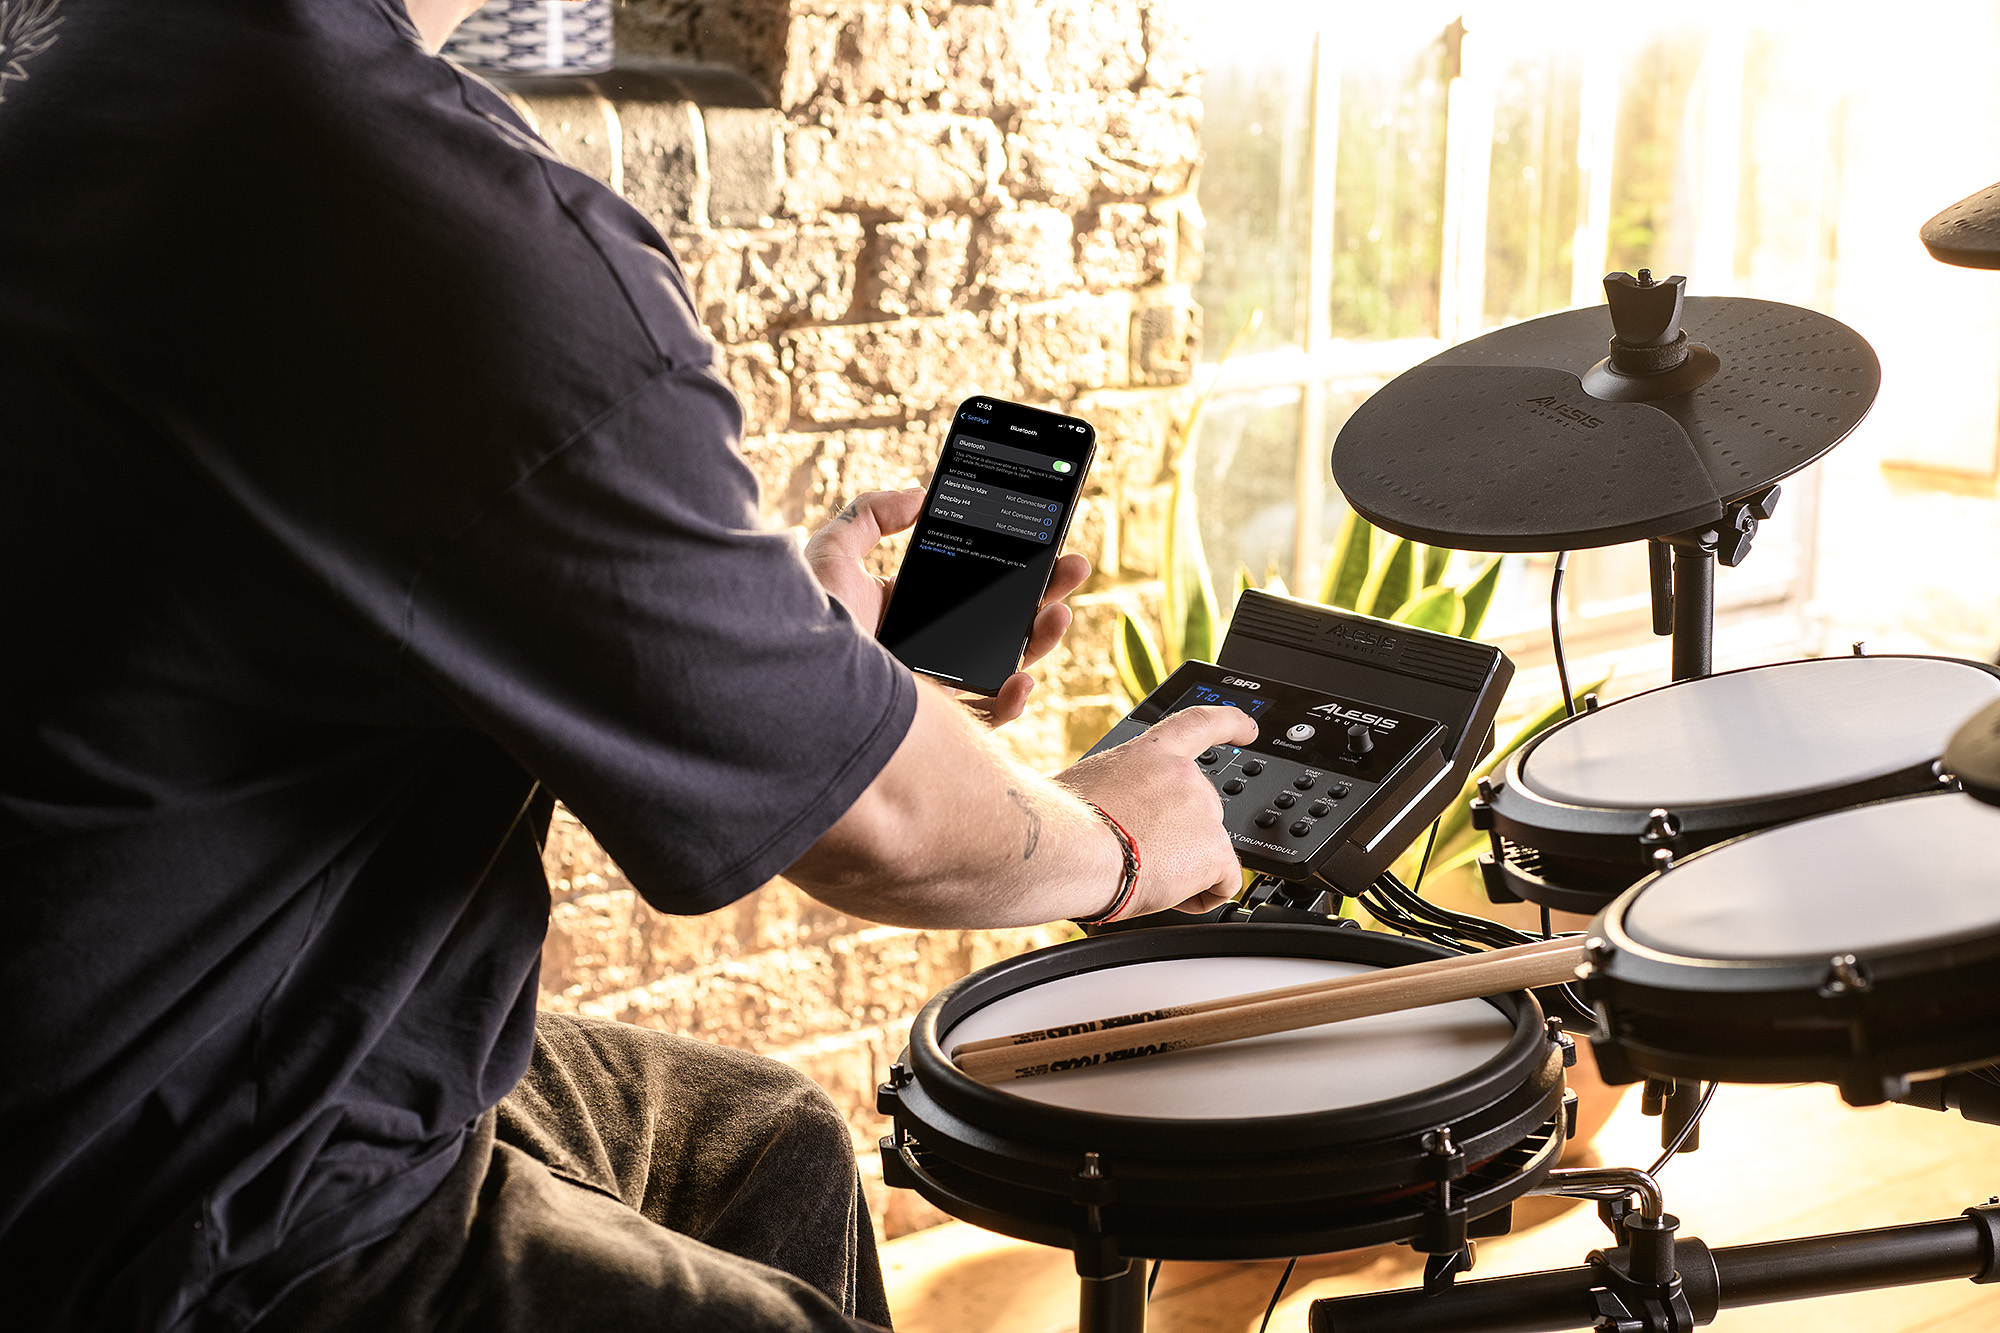 Alesis Nitro Max e-Drum Kit: Premium Feel in a Compact Kit 